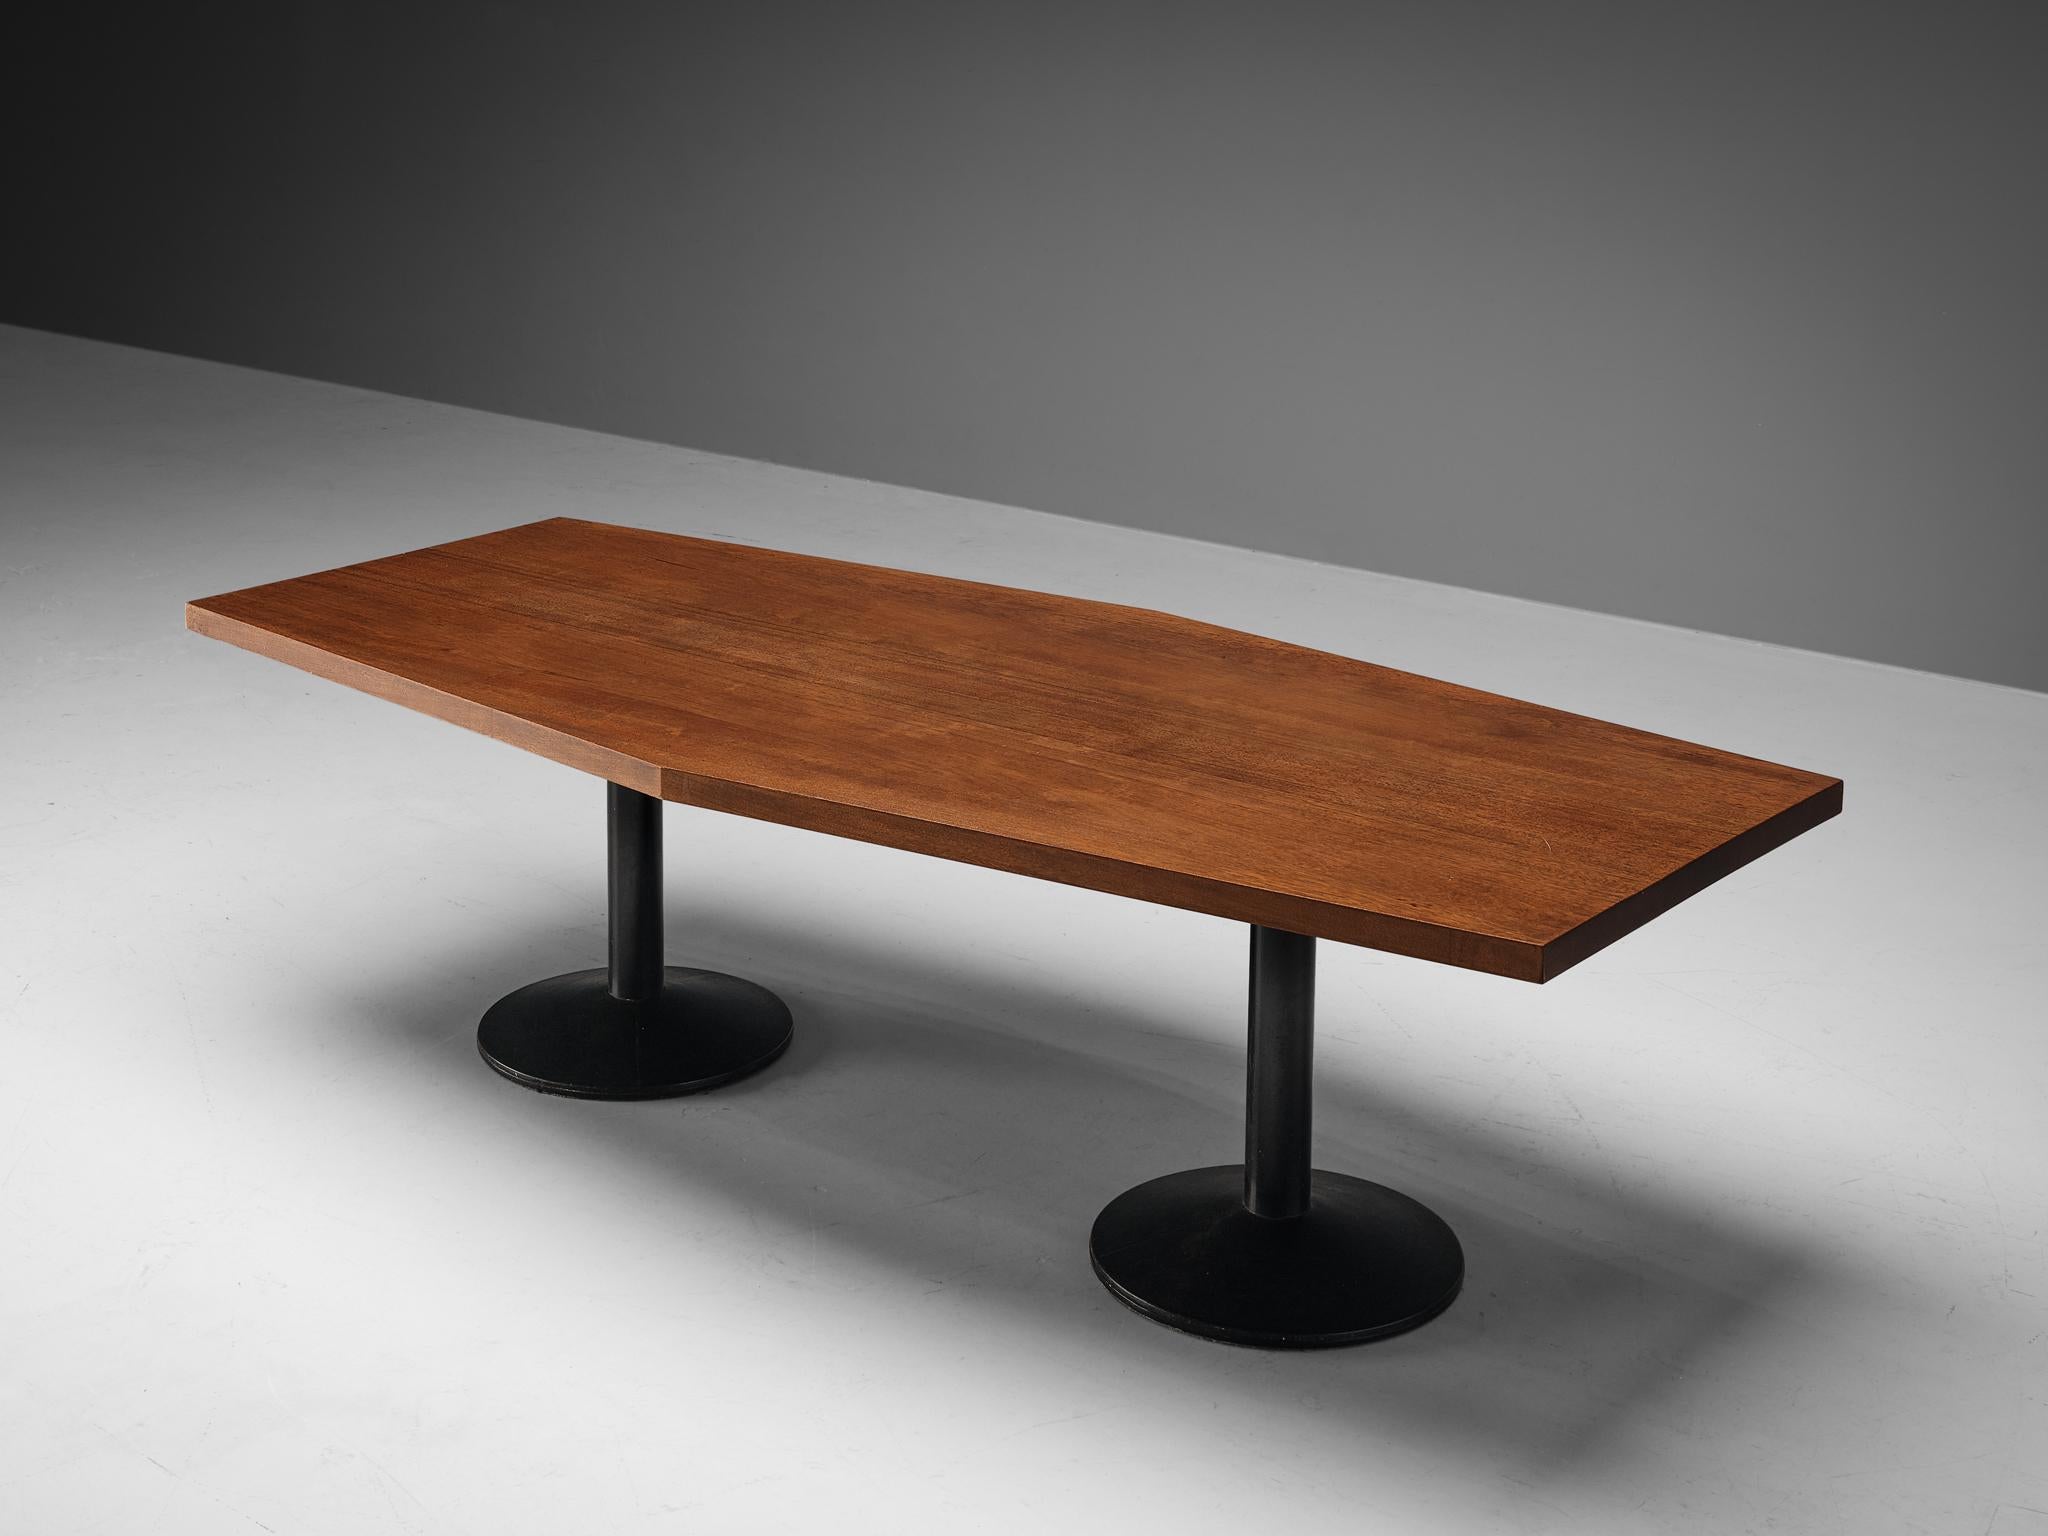 Wim den Boon, Esstisch Modell '01-69', Mahagoni massiv, Metall lackiert, Niederlande, Entwurf 1961

Dieser äußerst gut gestaltete Tisch in einer schönen, länglichen Sechseckform, die dem Raum einen visuellen Reiz verleiht, wurde von dem